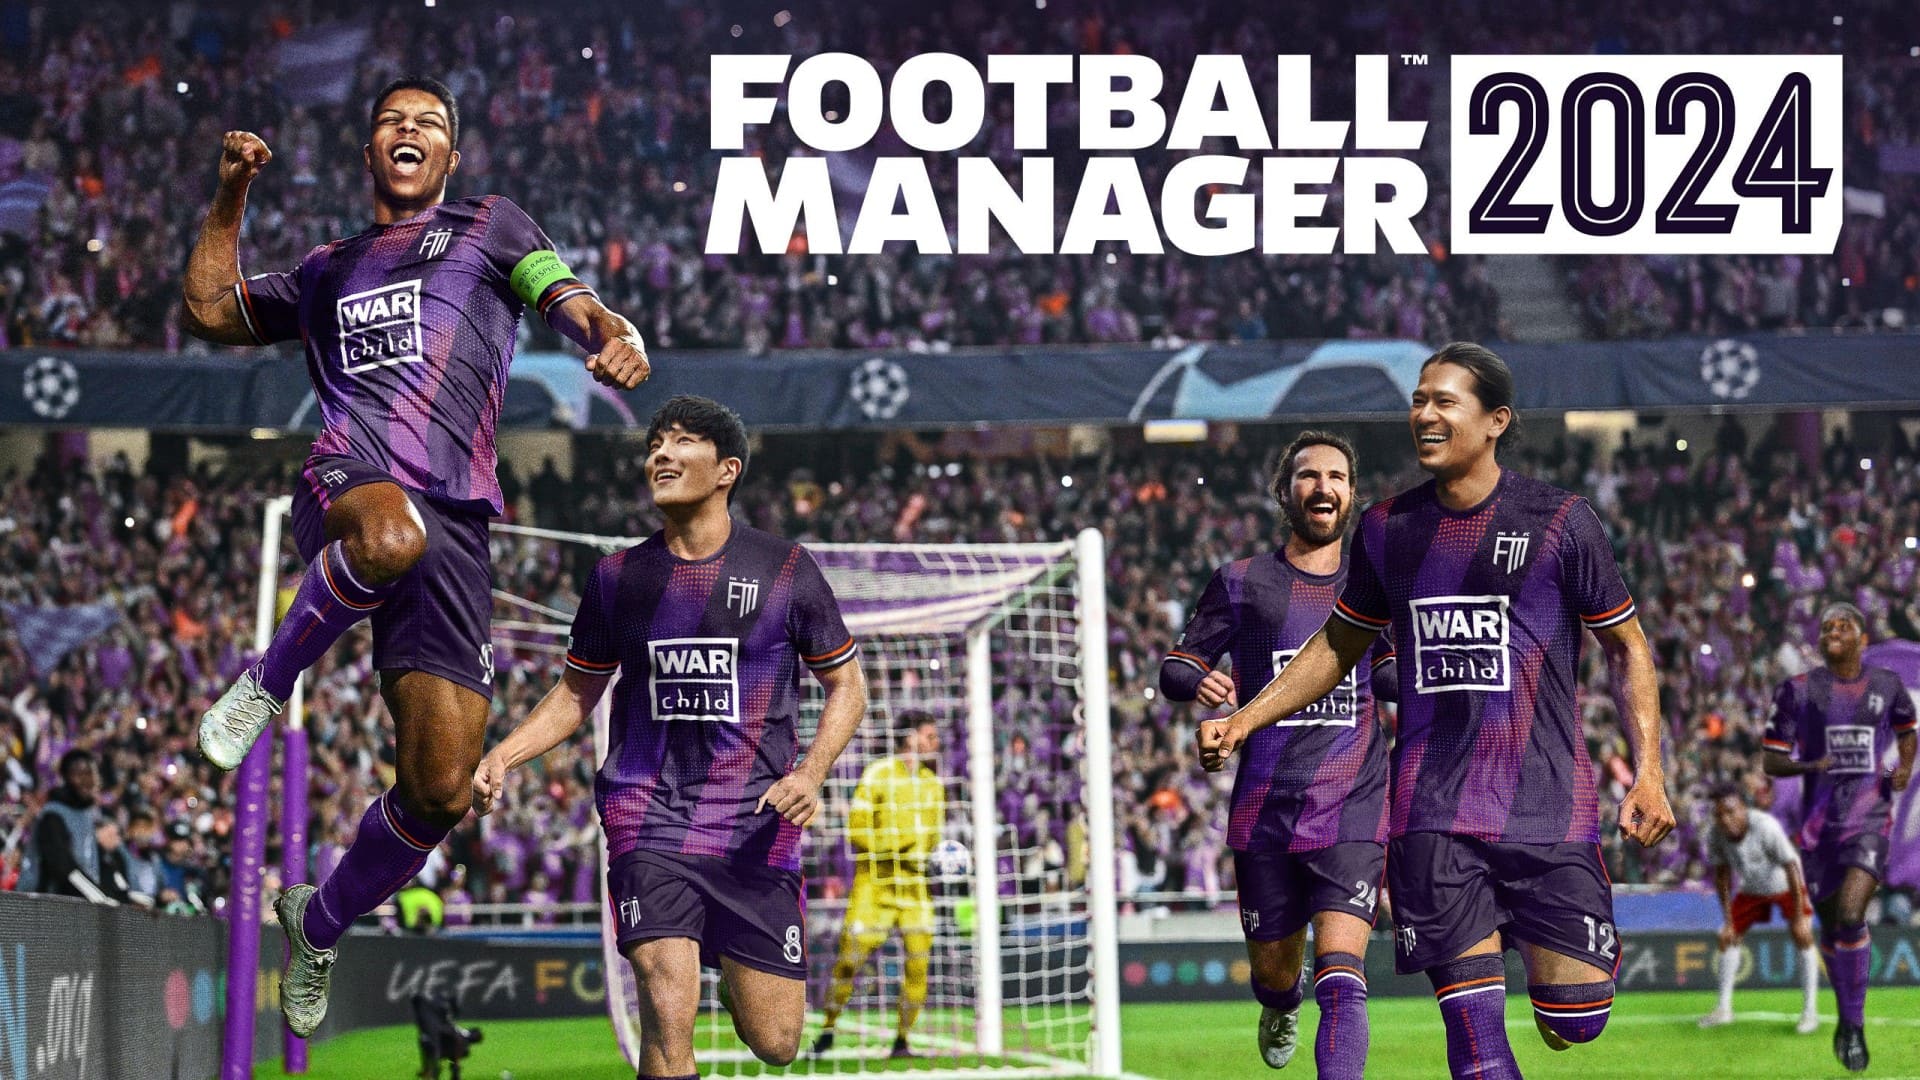 بازیکنان در حال خوشحالی در پوستر بازی Football Manager 2024